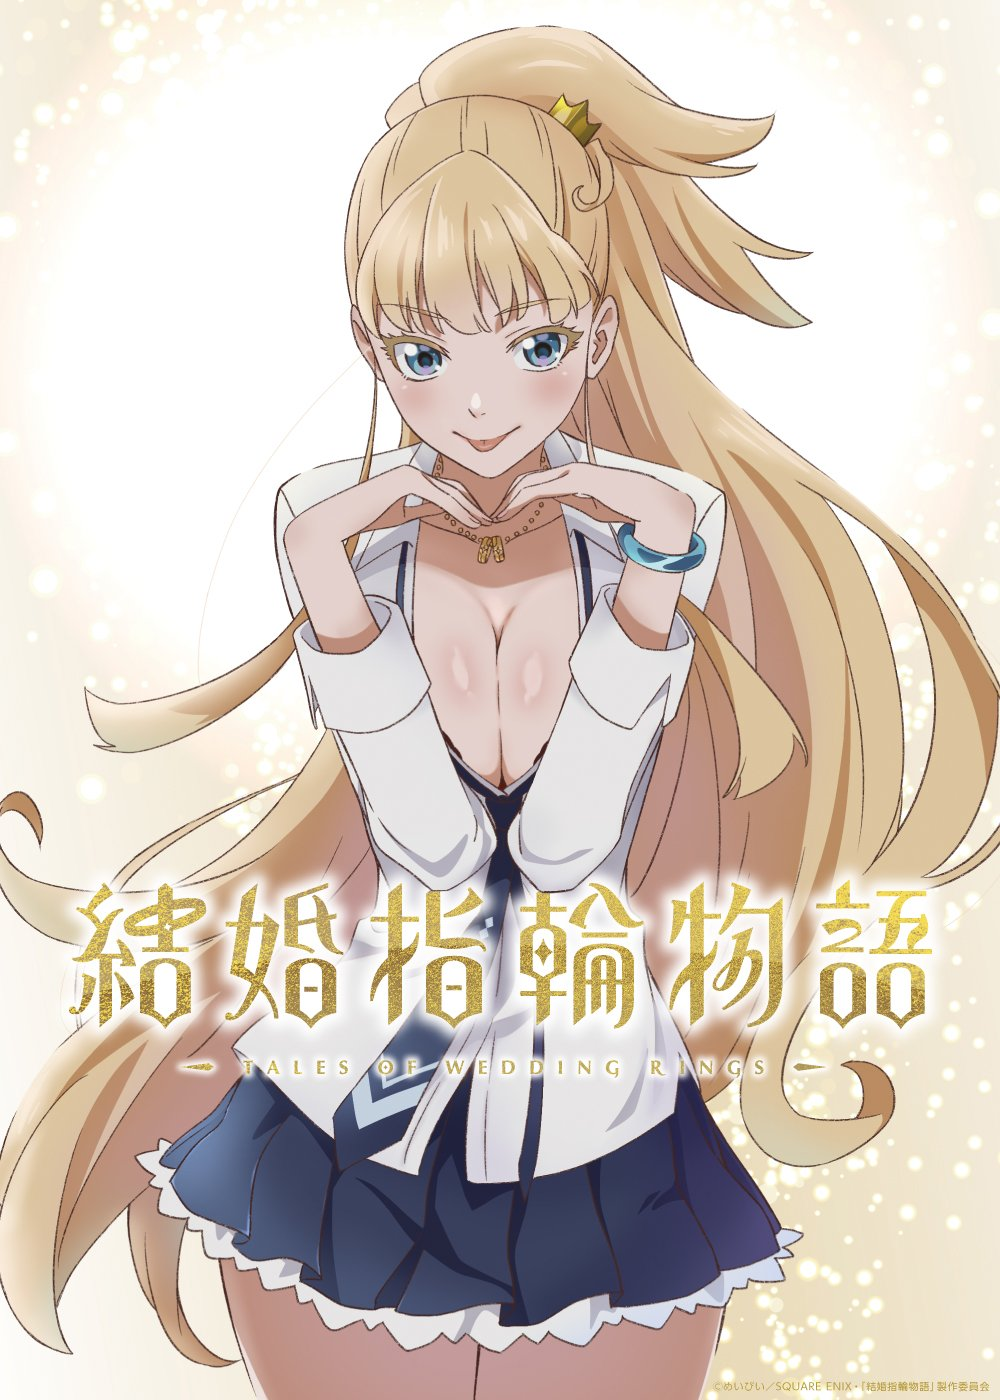 Adaptasi Anime Kekkon Yubiwa Monogatari (Tales of Wedding Rings): Tayang 2024, Visual Eksklusif, Trailer Menarik, dan Para Pemeran serta Kru Produksi Terungkap!